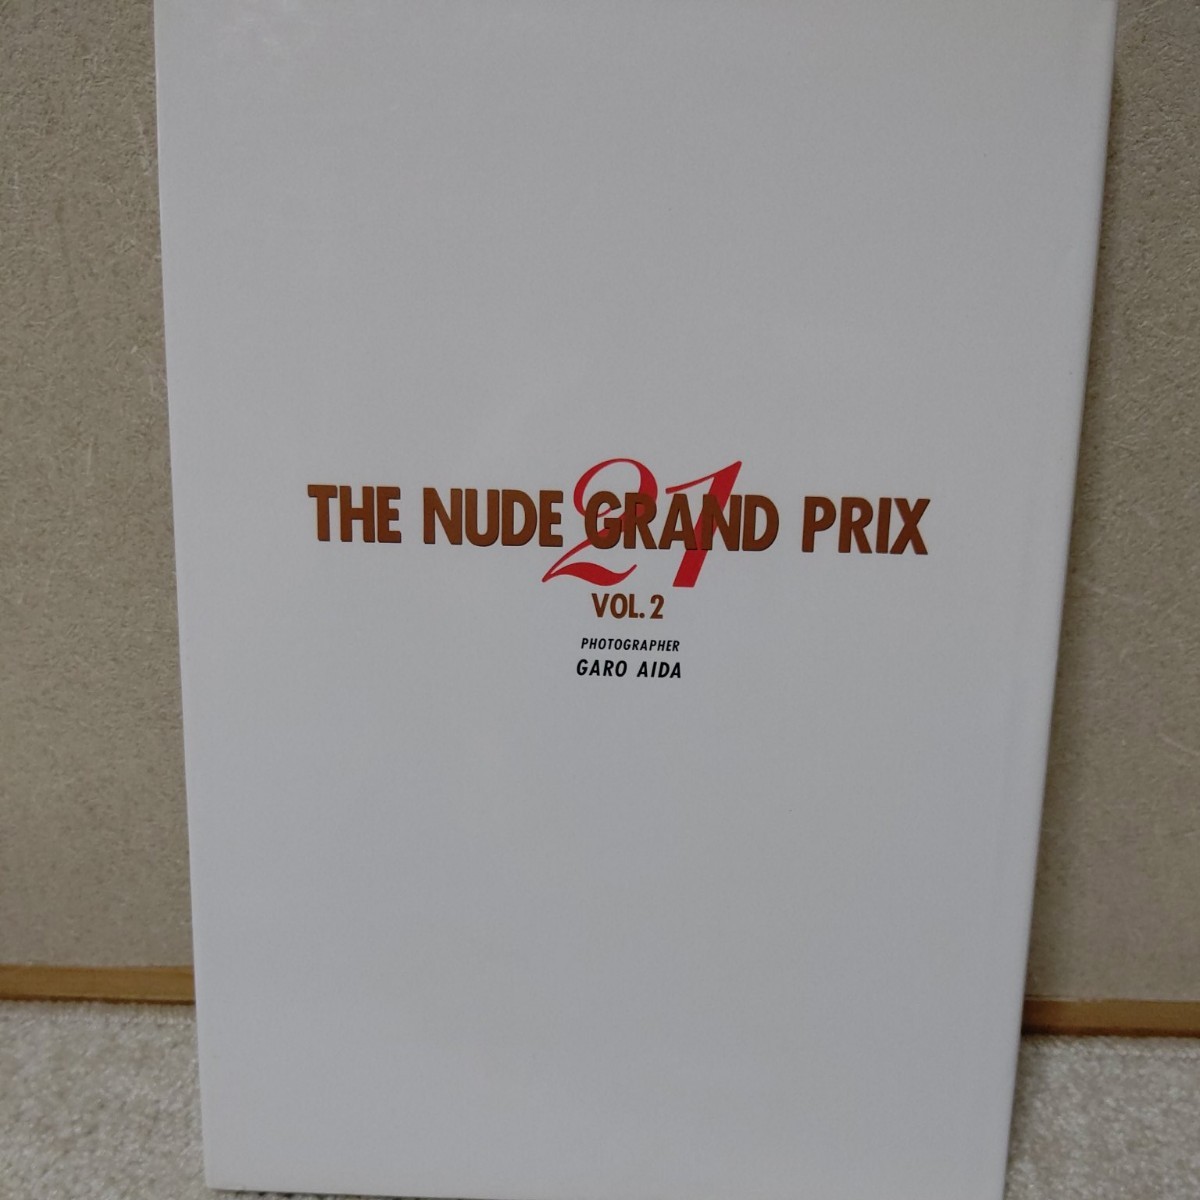 THE NUDE GRAND PRIX vol.2